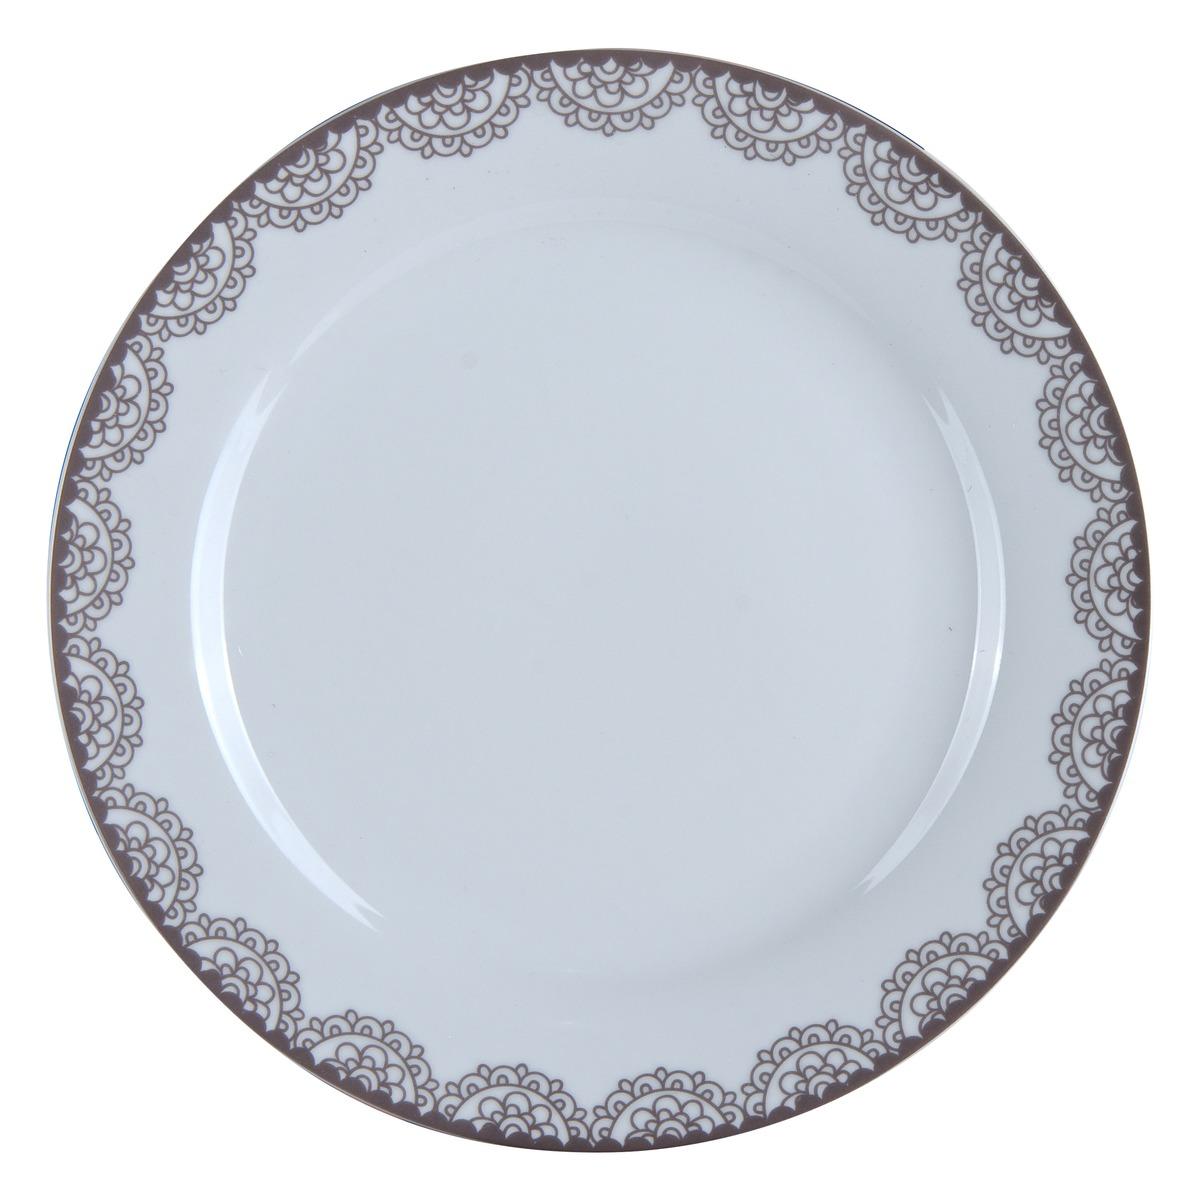 Assiette plate en porcelaine - diamètre 27 cm - Blanc, marron taupe